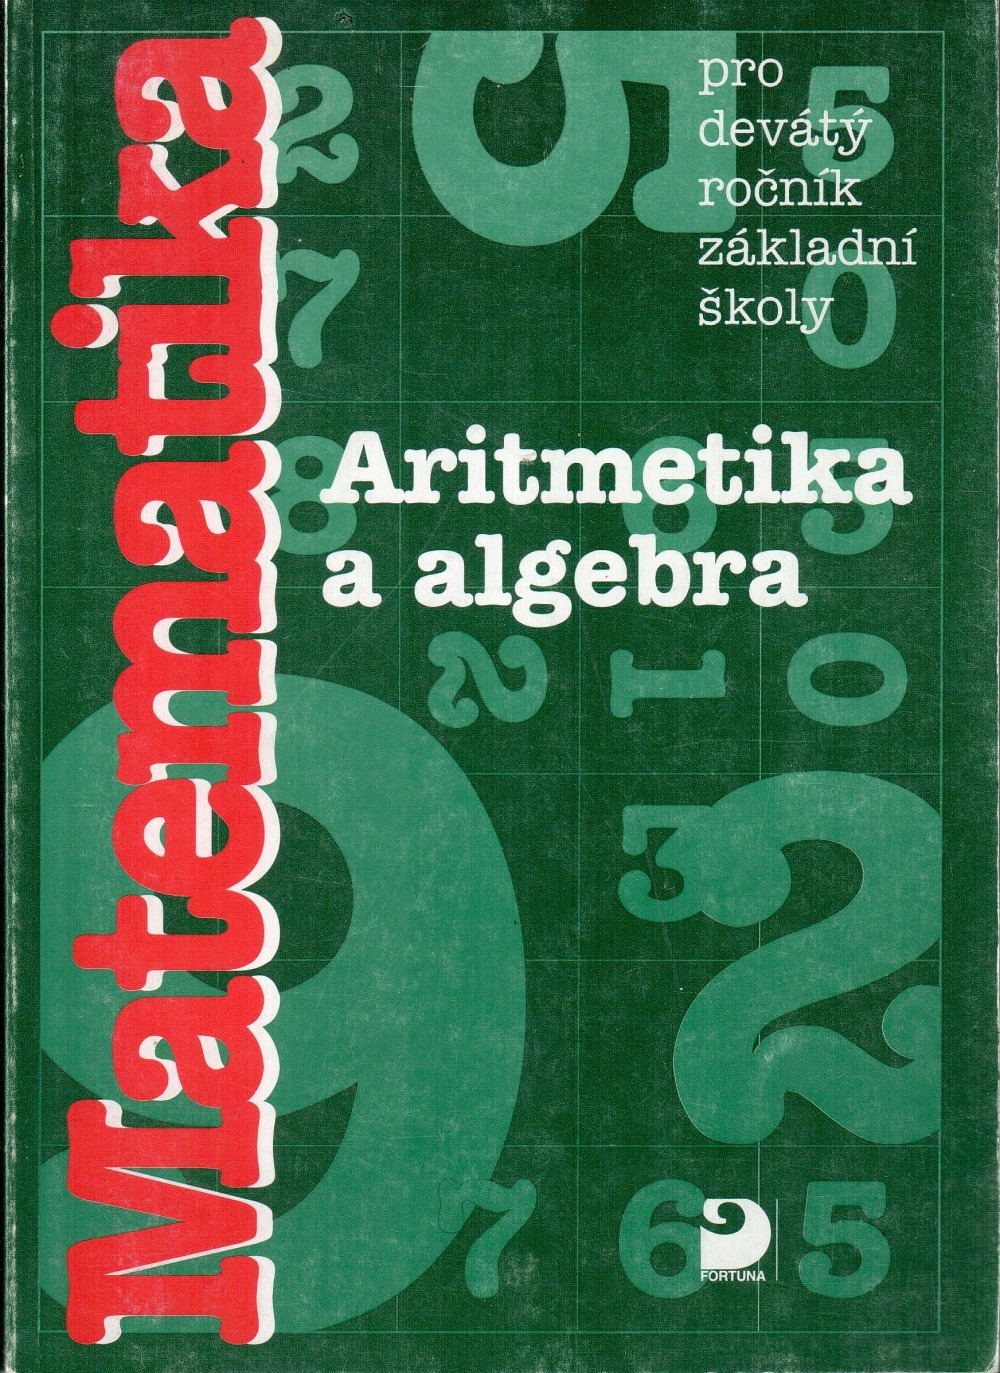 Matematika: Aritmetika a algebra pro 9. ročník základní školy a vyšší ročník gymnázia